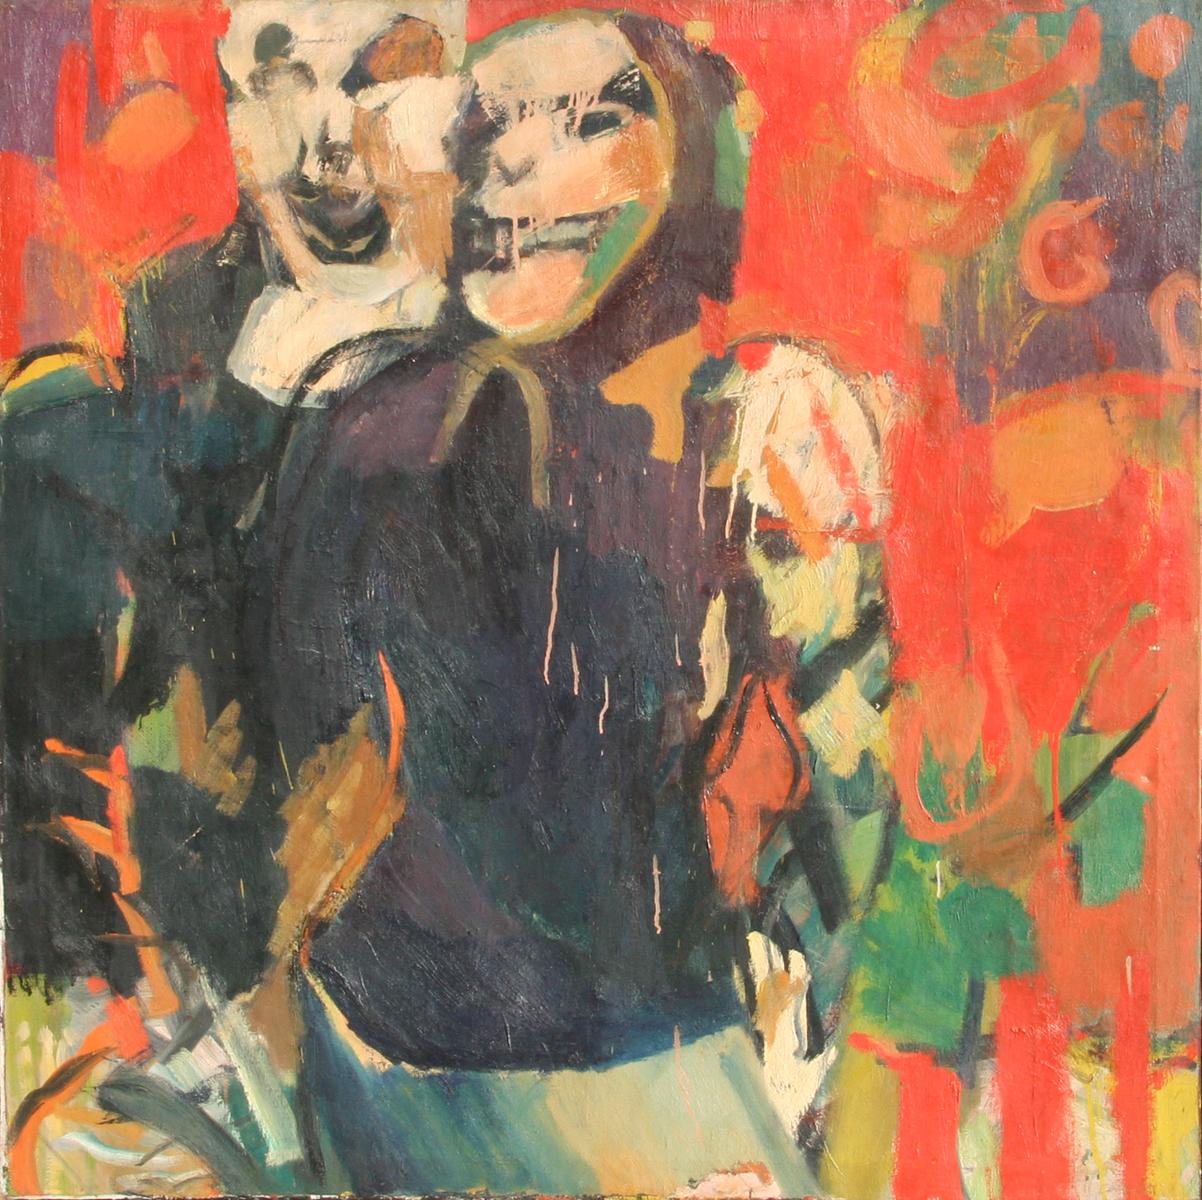 Künstlerin: Shirley Kaplan, Amerikanerin
Titel: Stetig gehen
Jahr: ca. 1964
Medium: Öl auf Leinwand, rechts unten signiert, verso betitelt
Größe: 48 Zoll x 48 Zoll (121,92 cm x 121,92 cm)